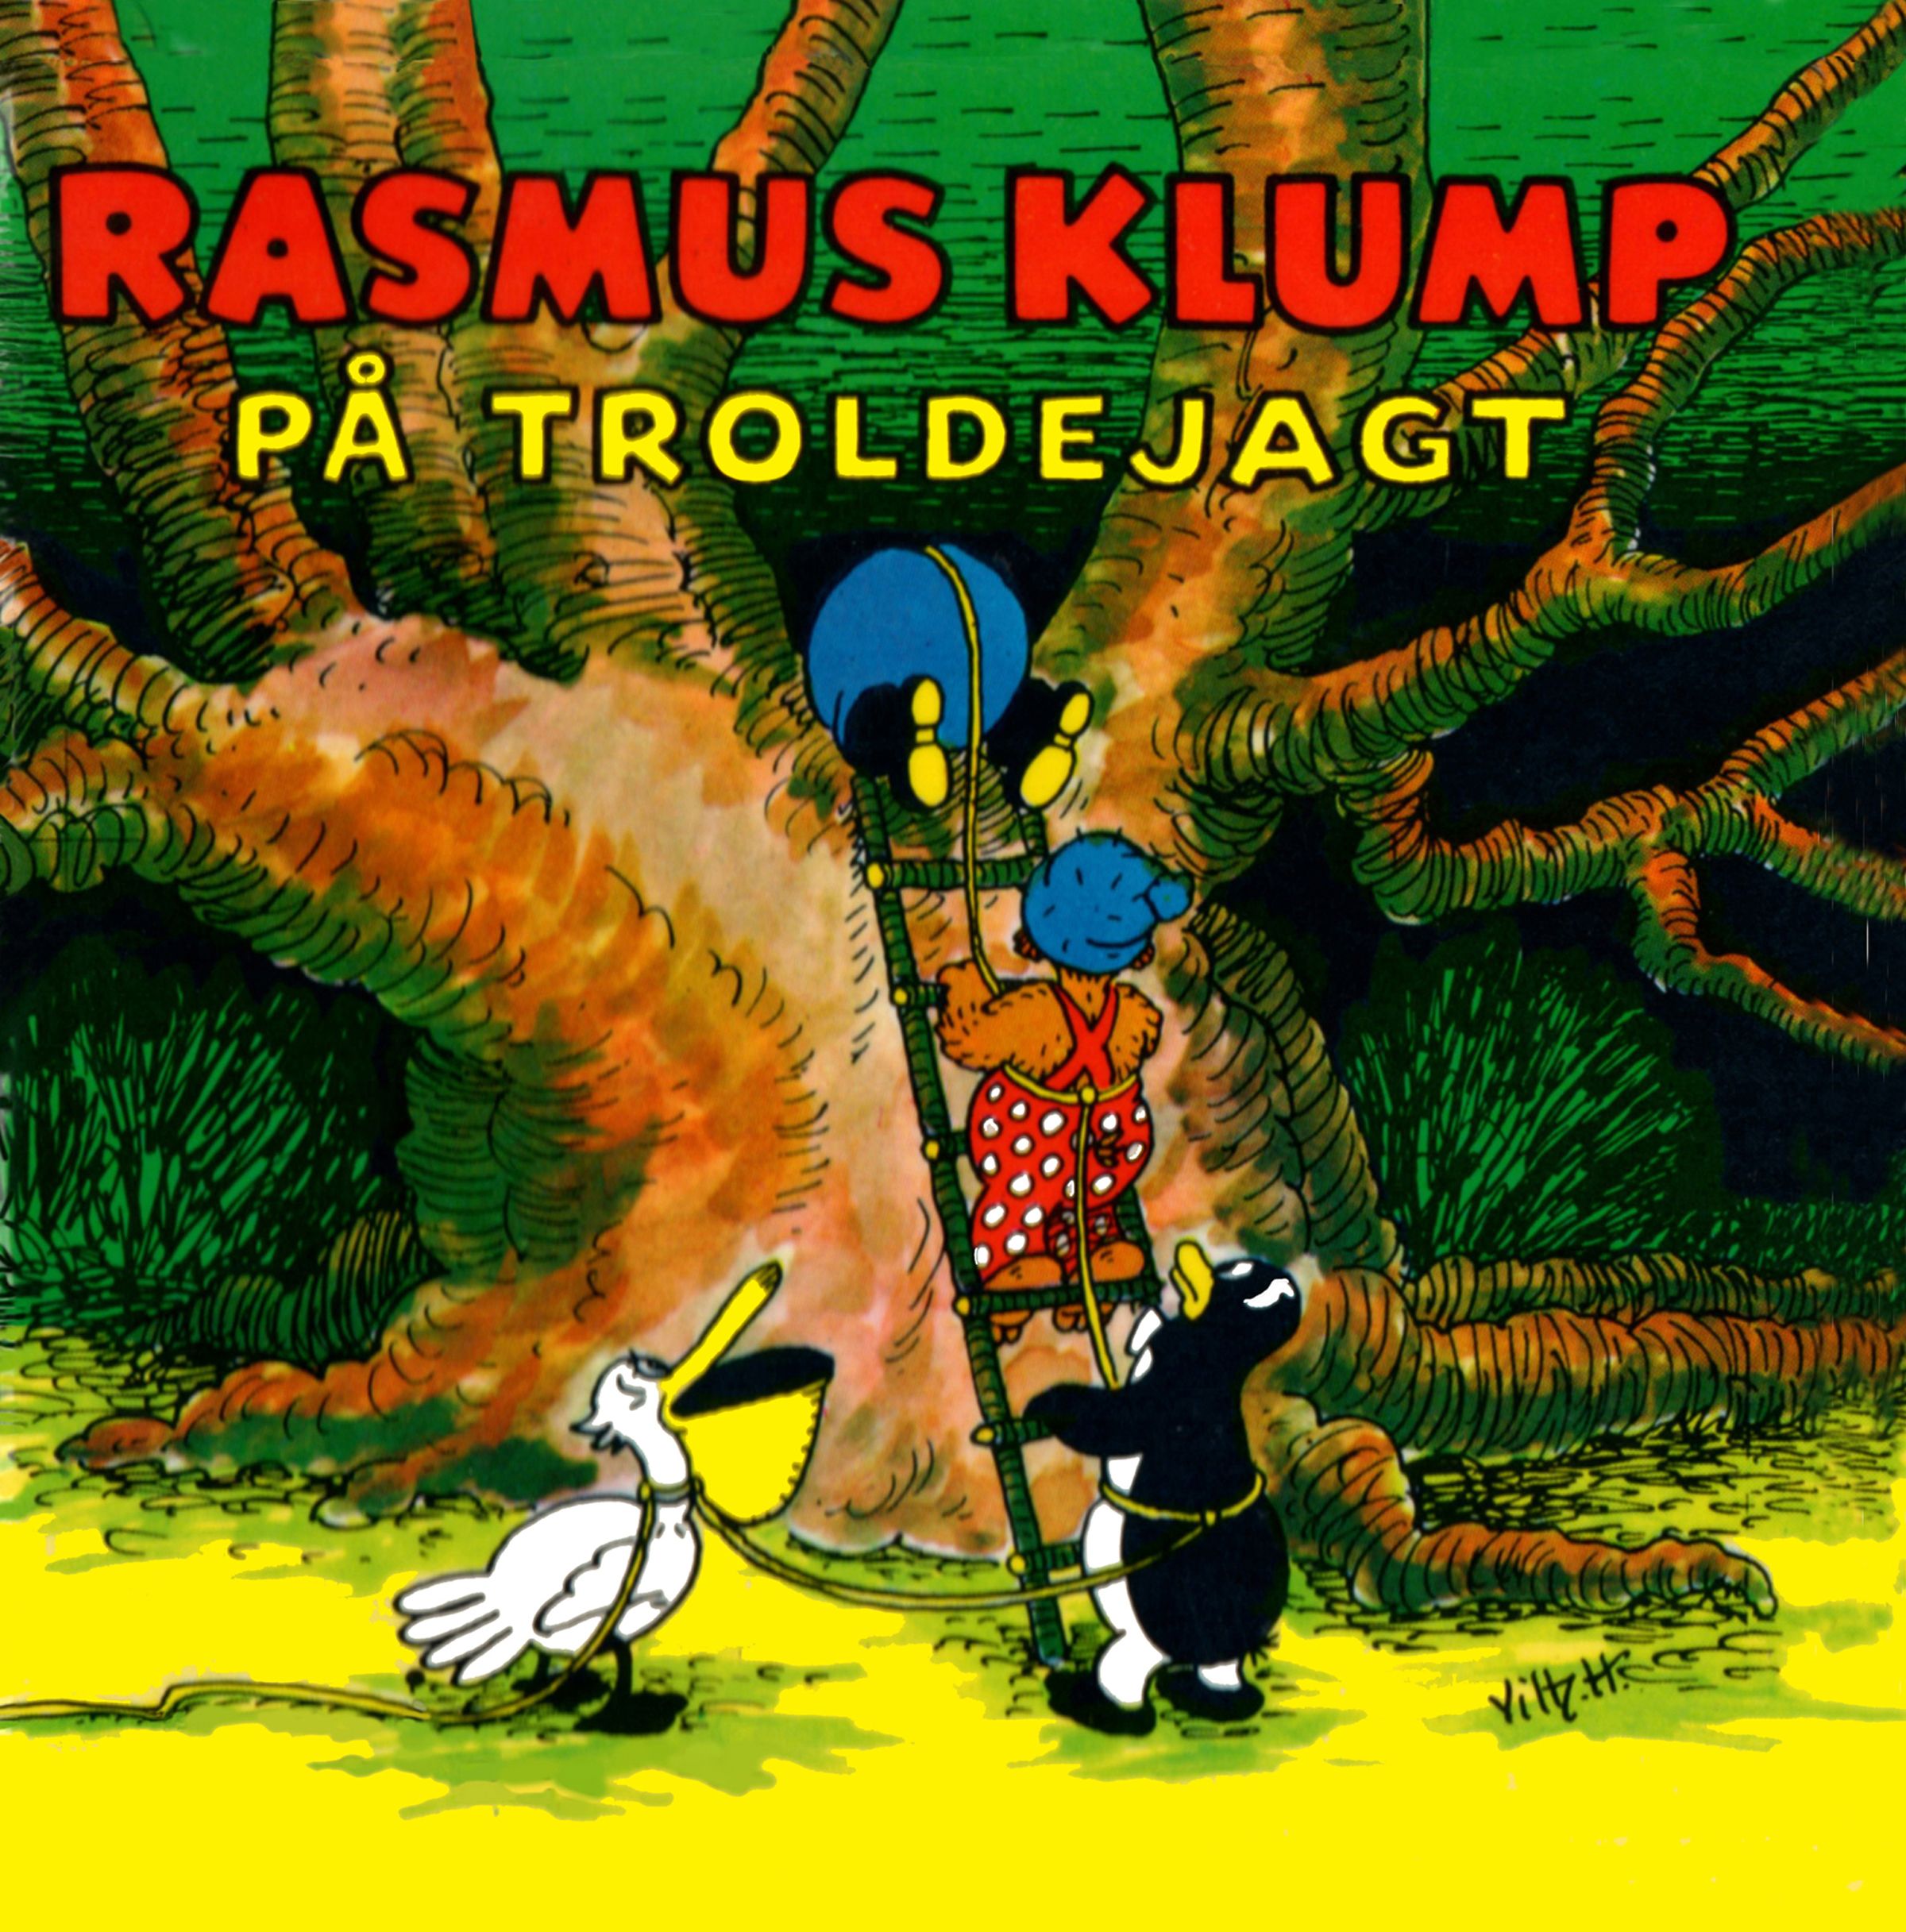 Rasmus Klump på troldejagt, ljudbok av Carla Og Vilh. Hansen